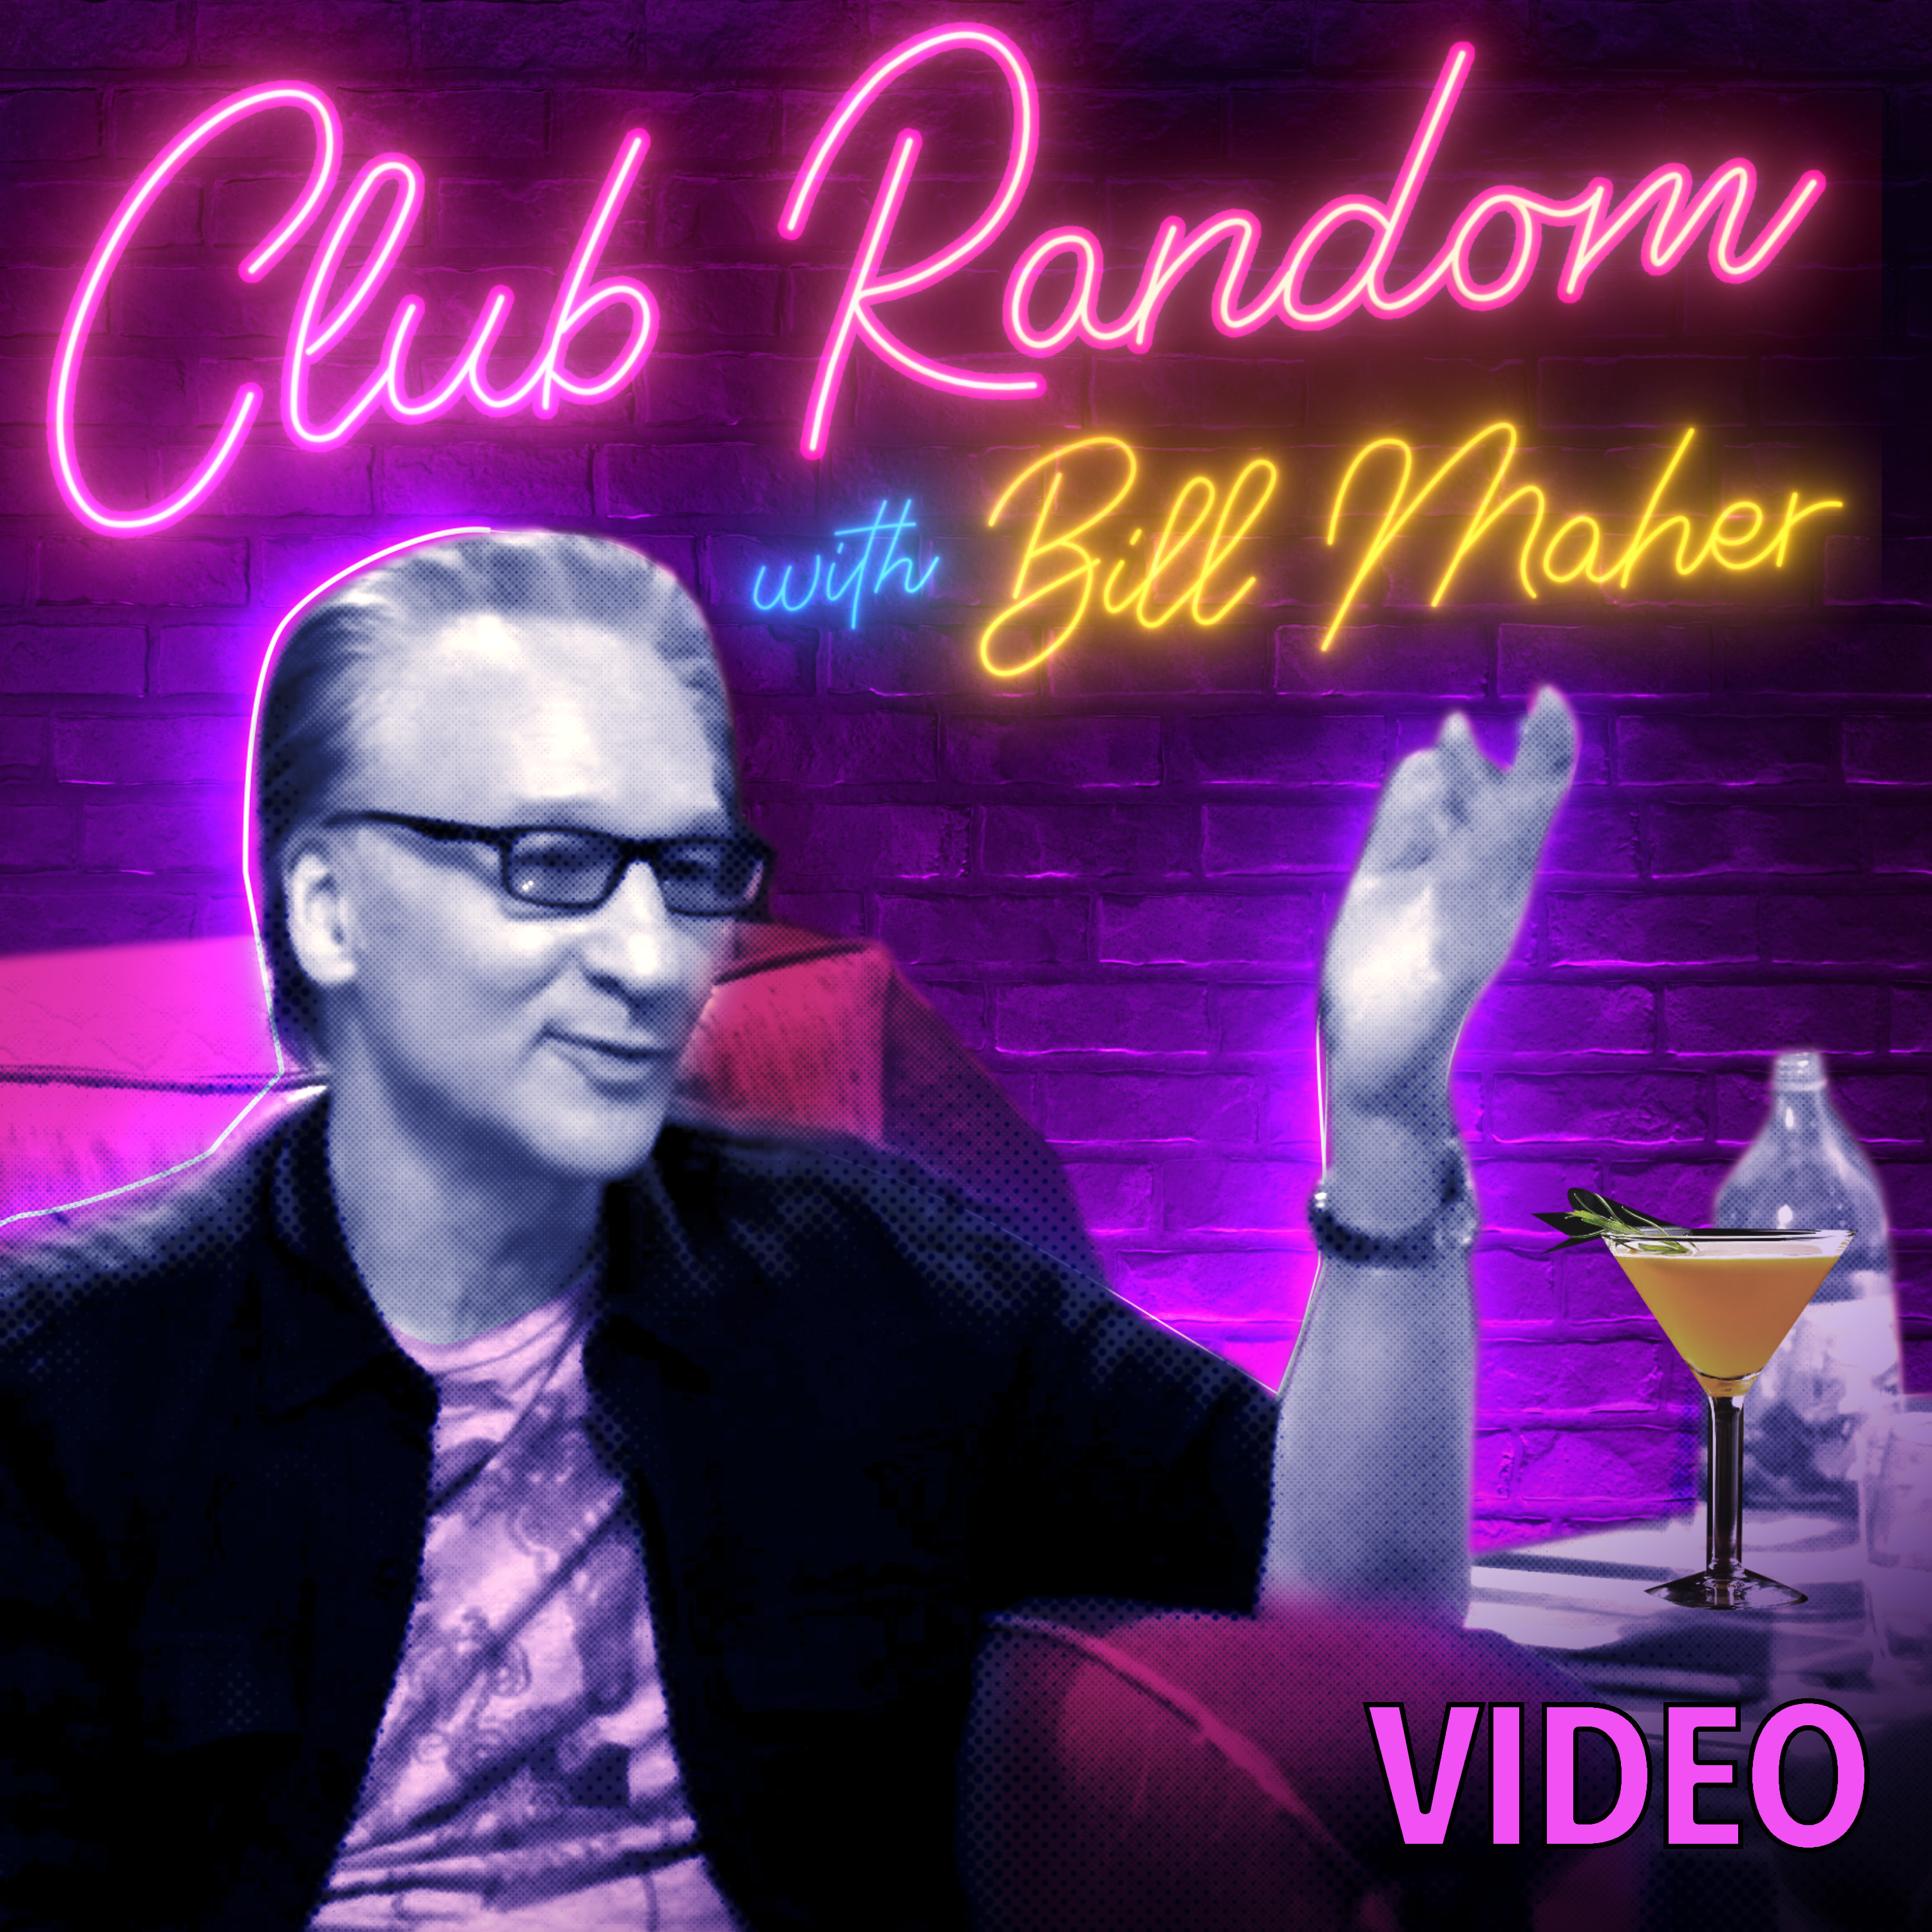 Video: Quentin Tarantino + Judd Apatow; Ms. Pat | Club Random with Bill Maher